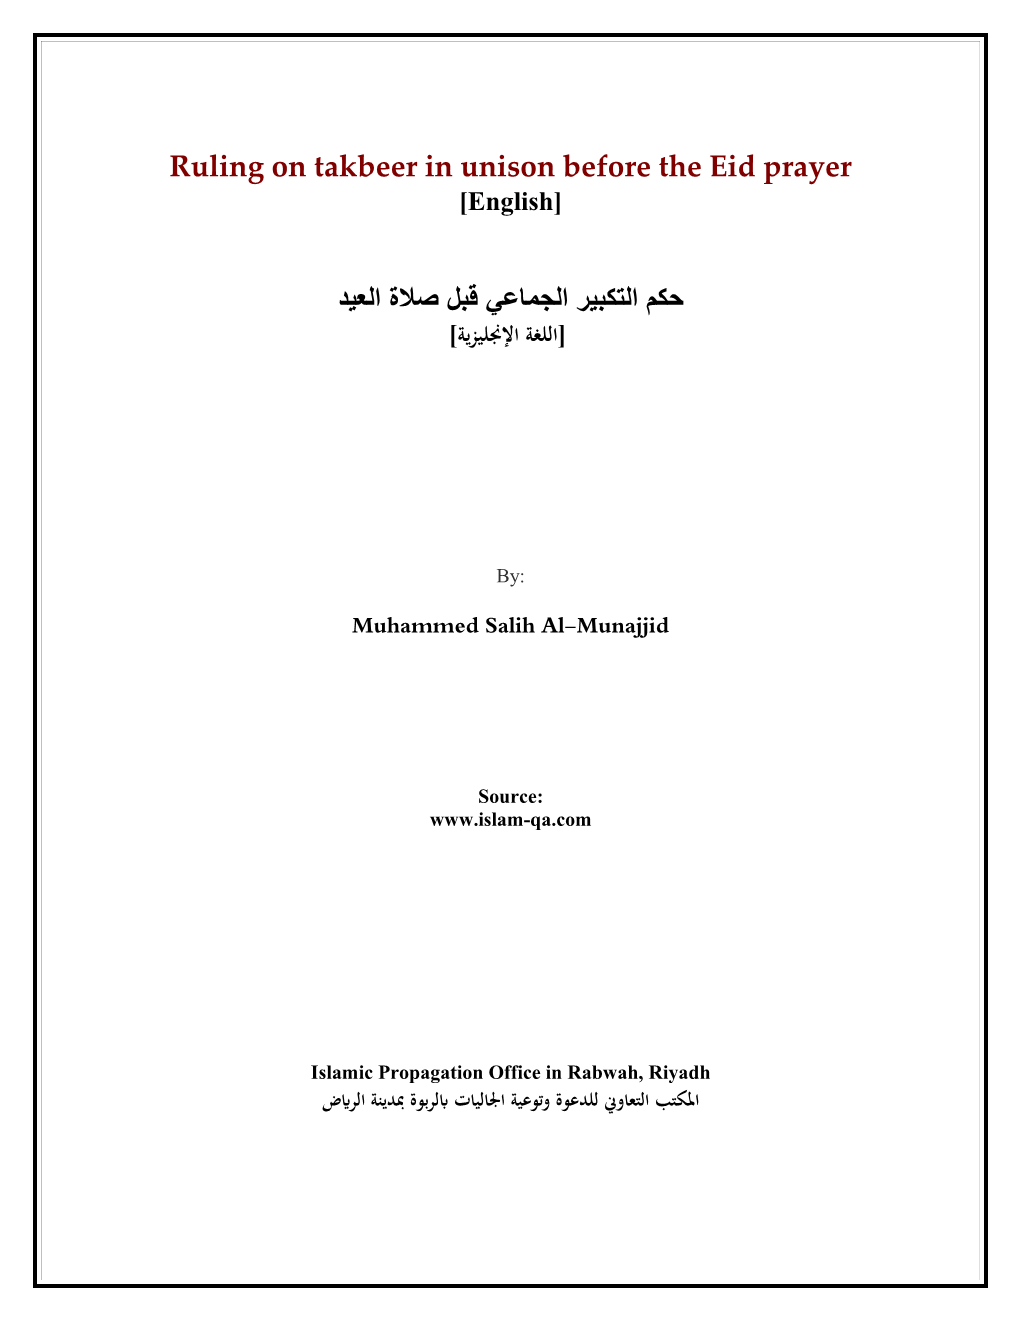 Ruling on Takbeer in Unison Before the Eid Prayer